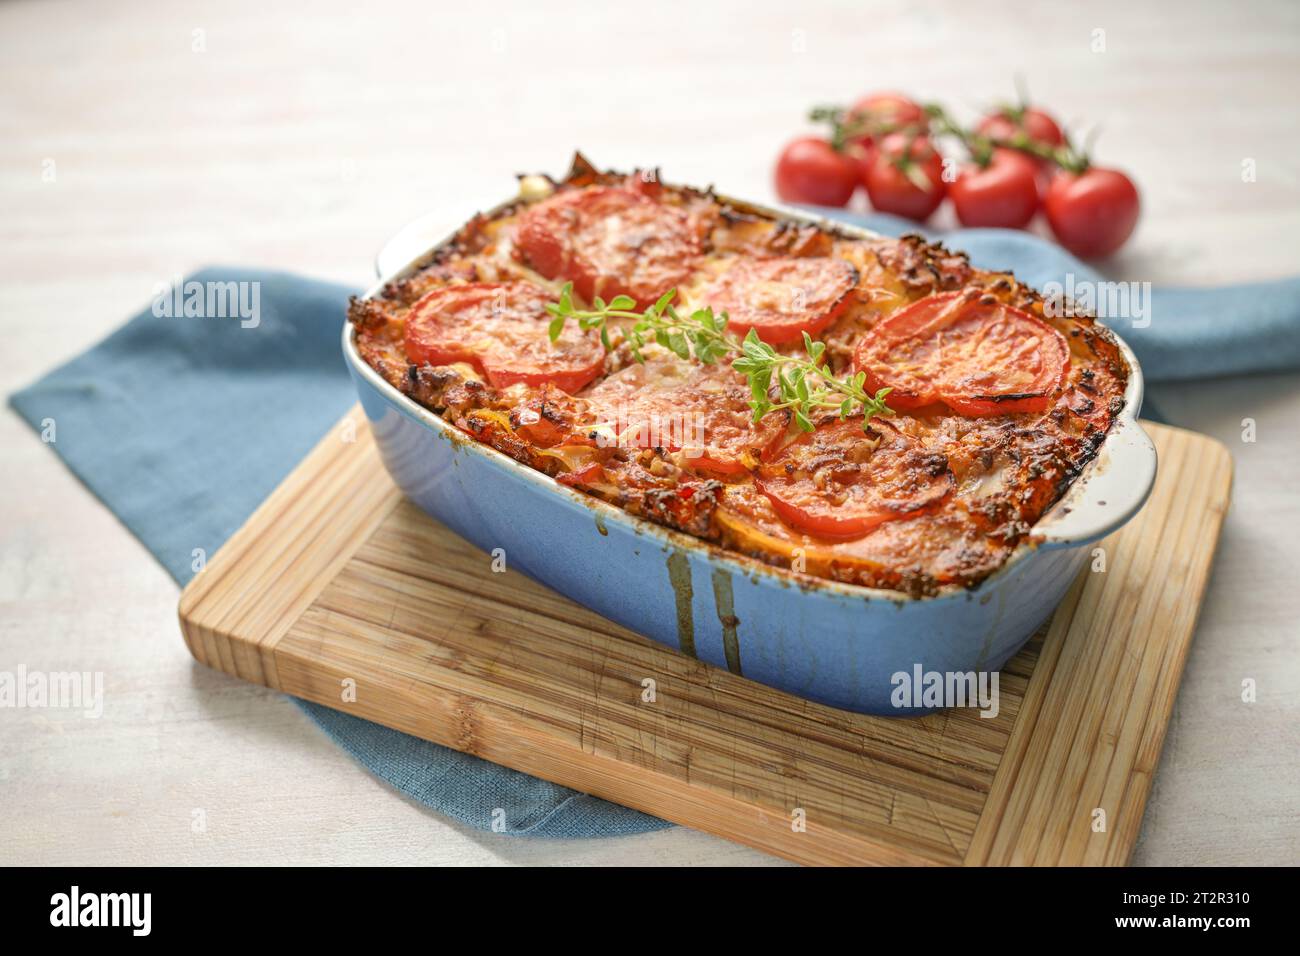 Lasagne, frisch aus dem Ofen, Auflaufform aus flachen Nudelblättern, Hackfleisch, Gemüse und Tomaten, garniert mit geschmolzenem Käse auf einem Holzk Stockfoto